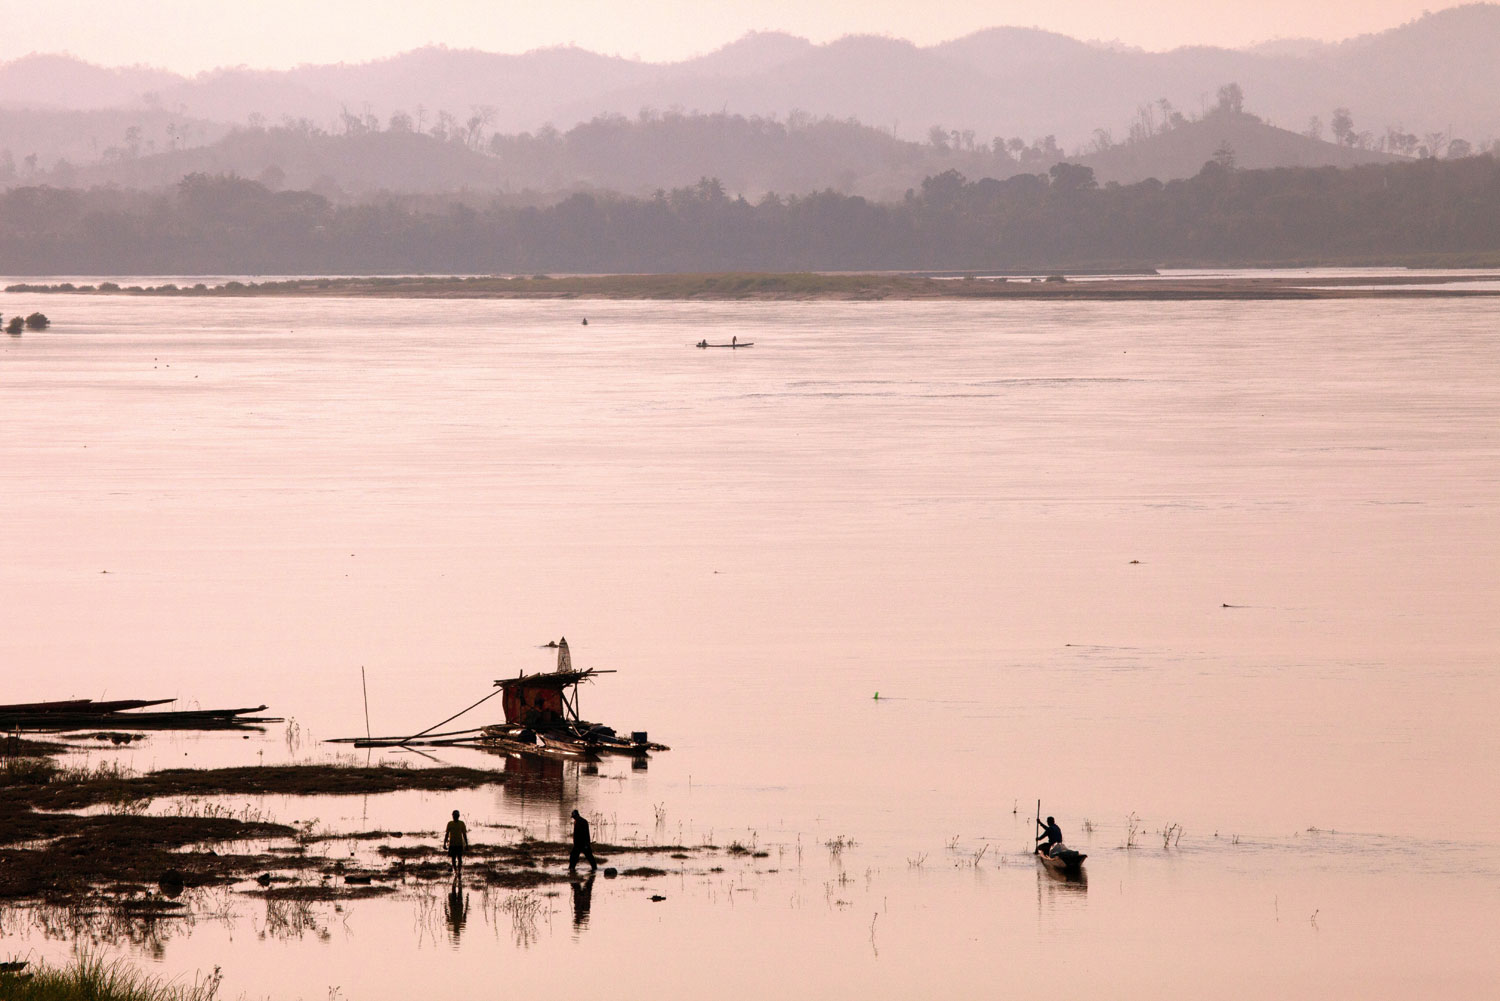 Mekong River in Soi Chai Khong, Thailand.